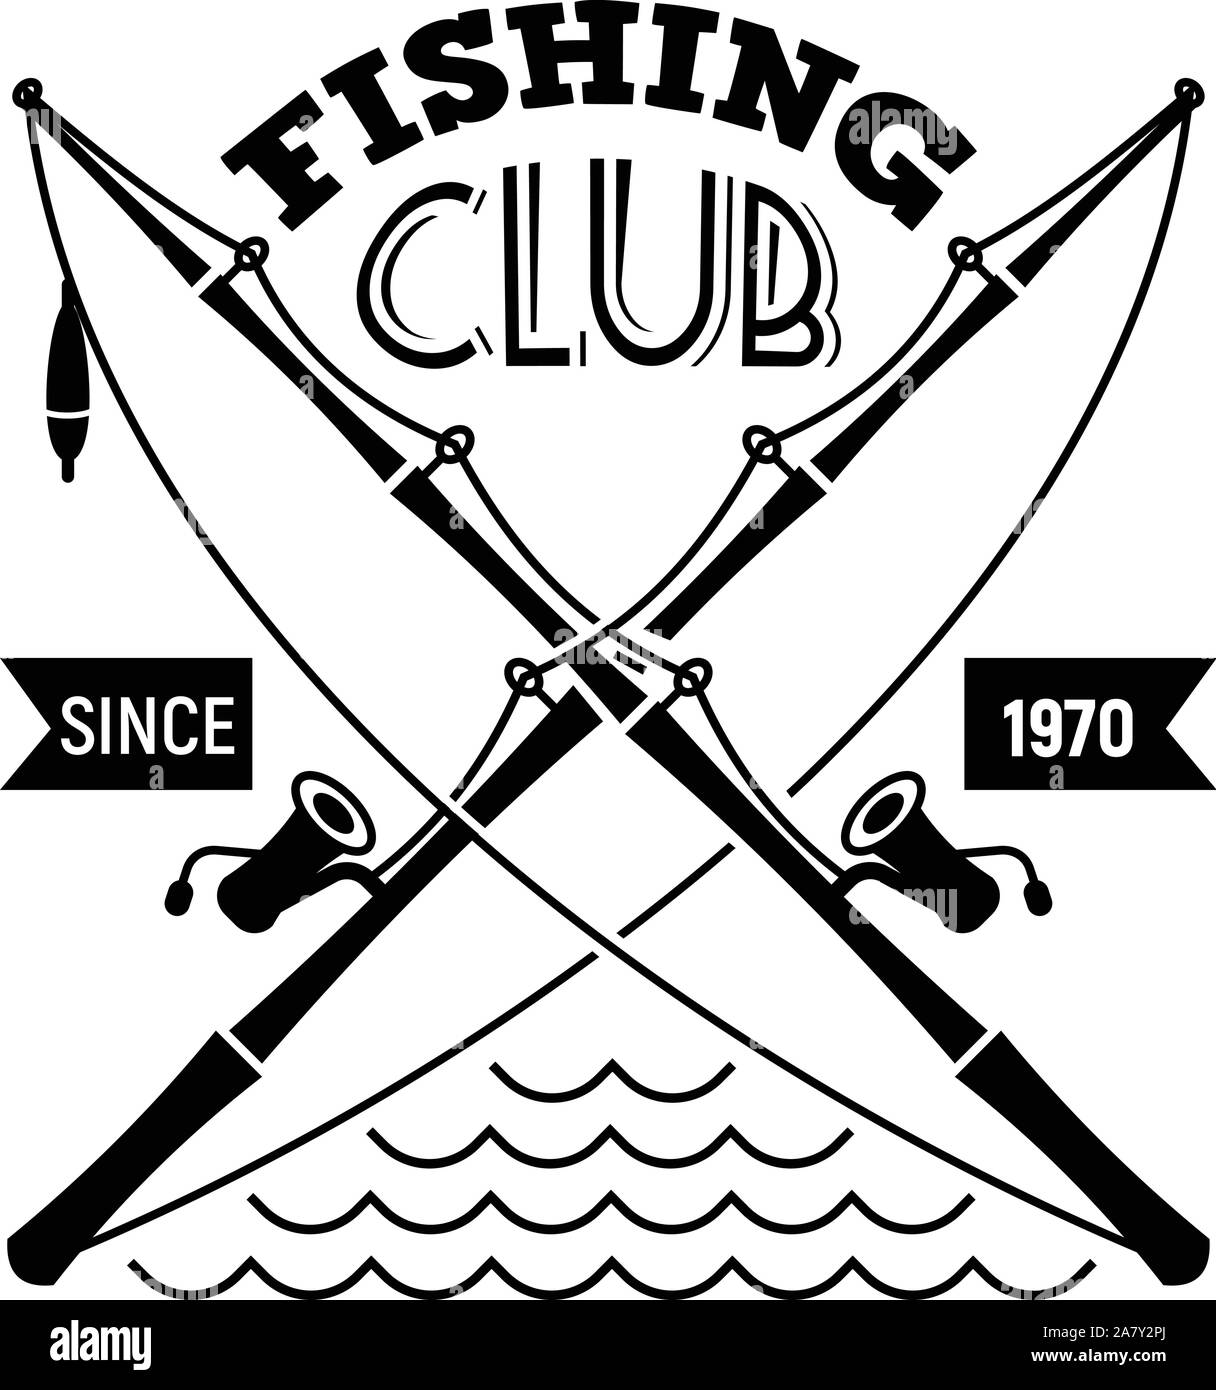 Fishing Club Logo, einfachen Stil Stock-Vektorgrafik - Alamy